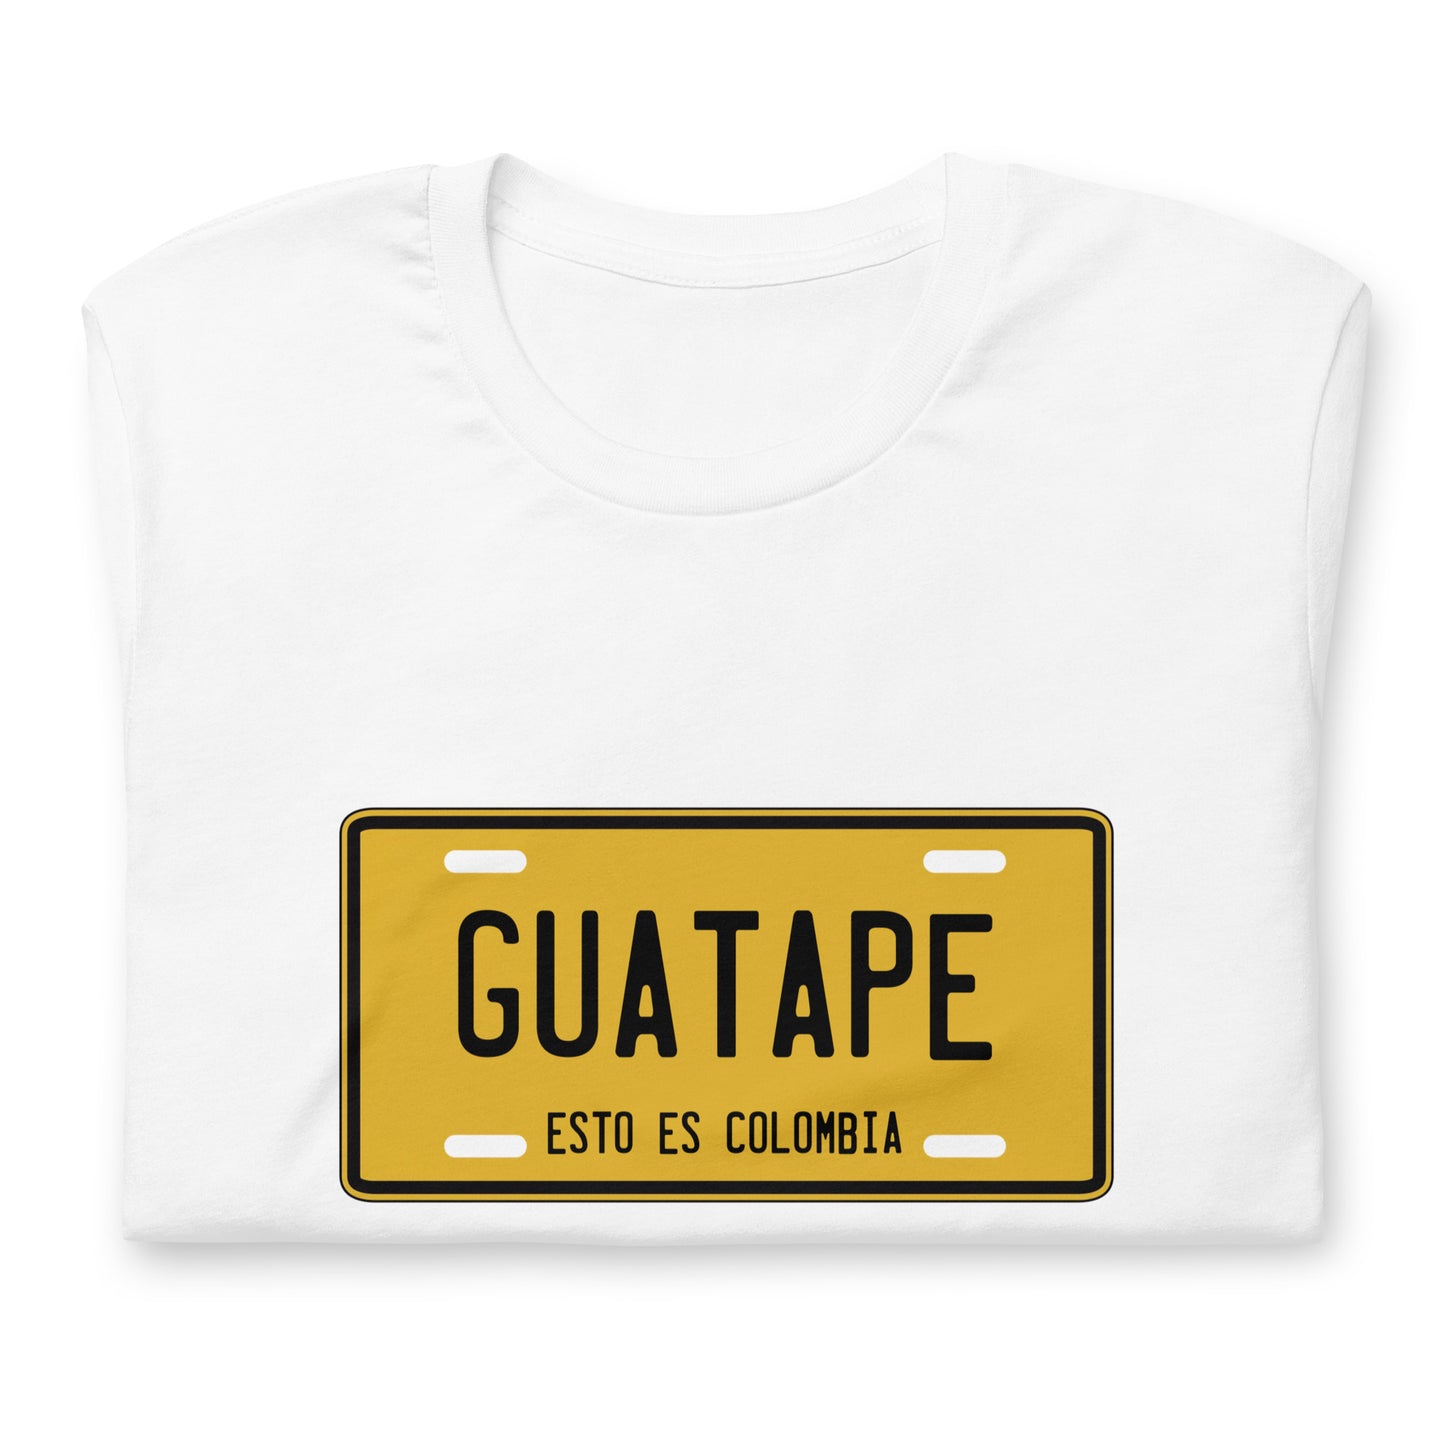 Guatapé esto es Colombia